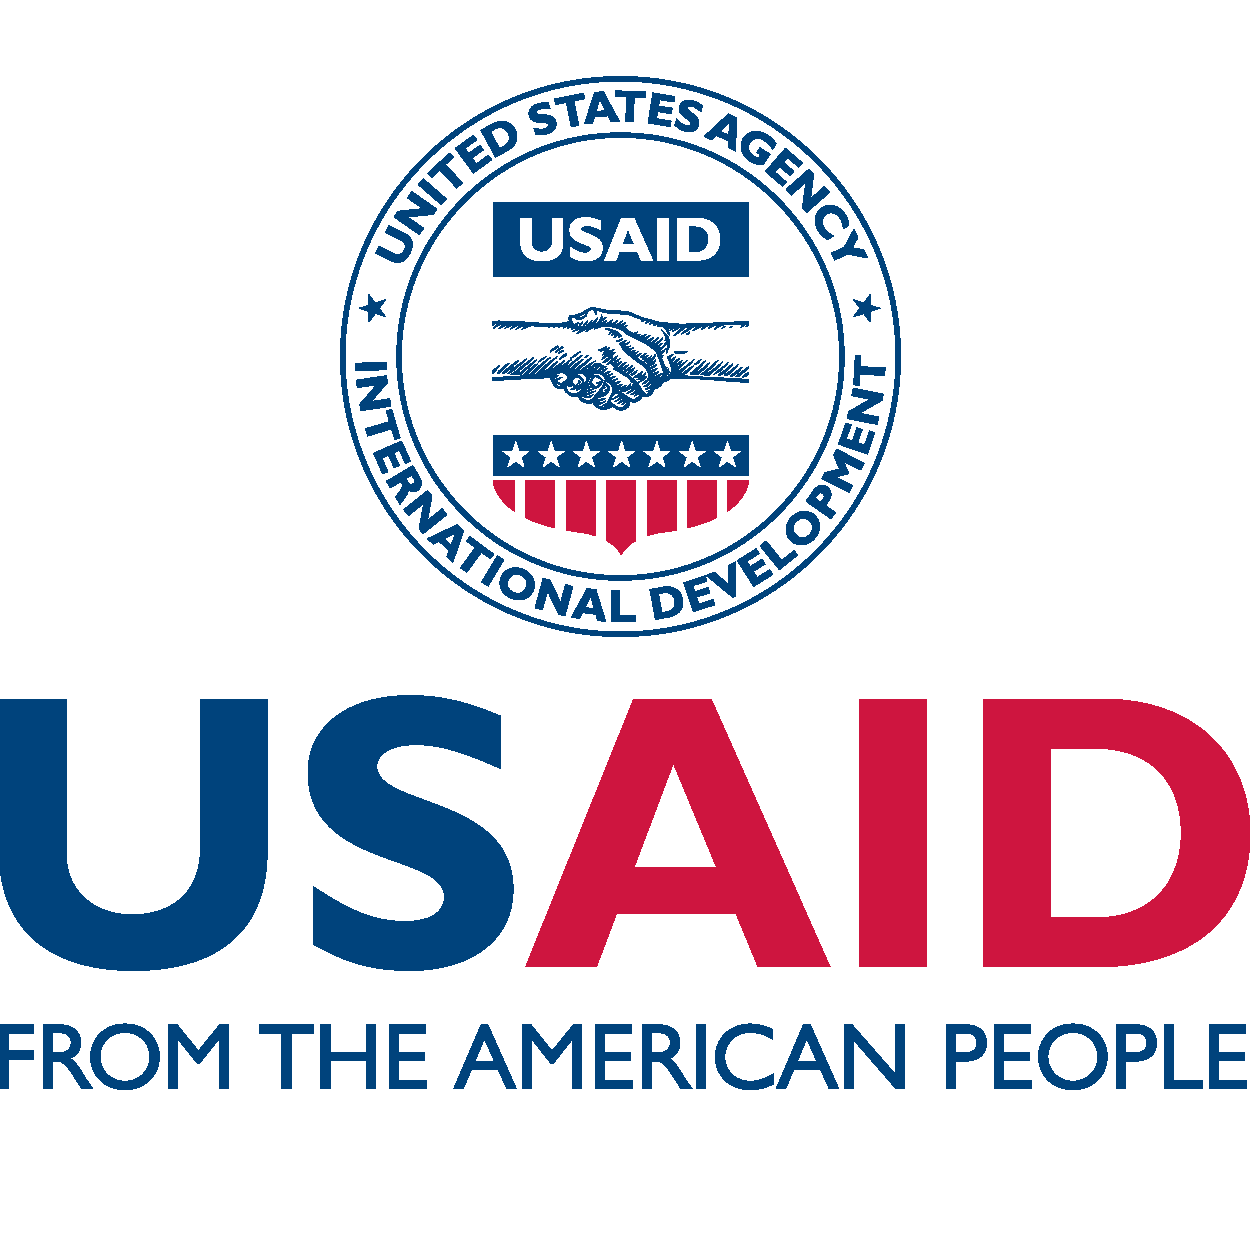 USAIDlogo